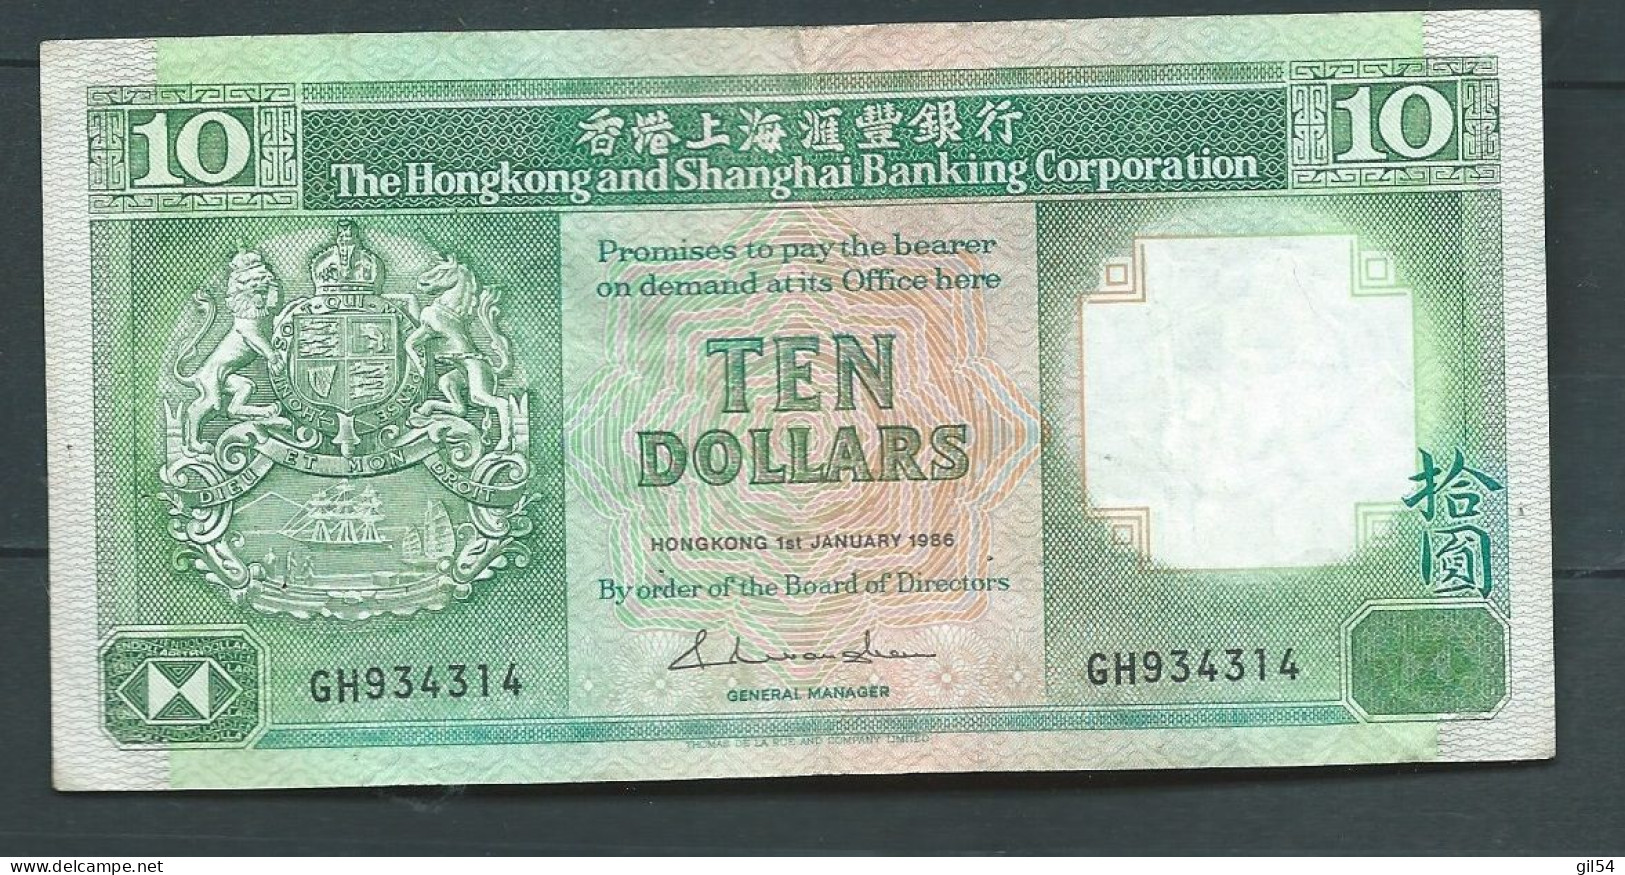 HONG KONG 10 DOLLARS 1986  -  GH934314  Laura 14103 - Hong Kong